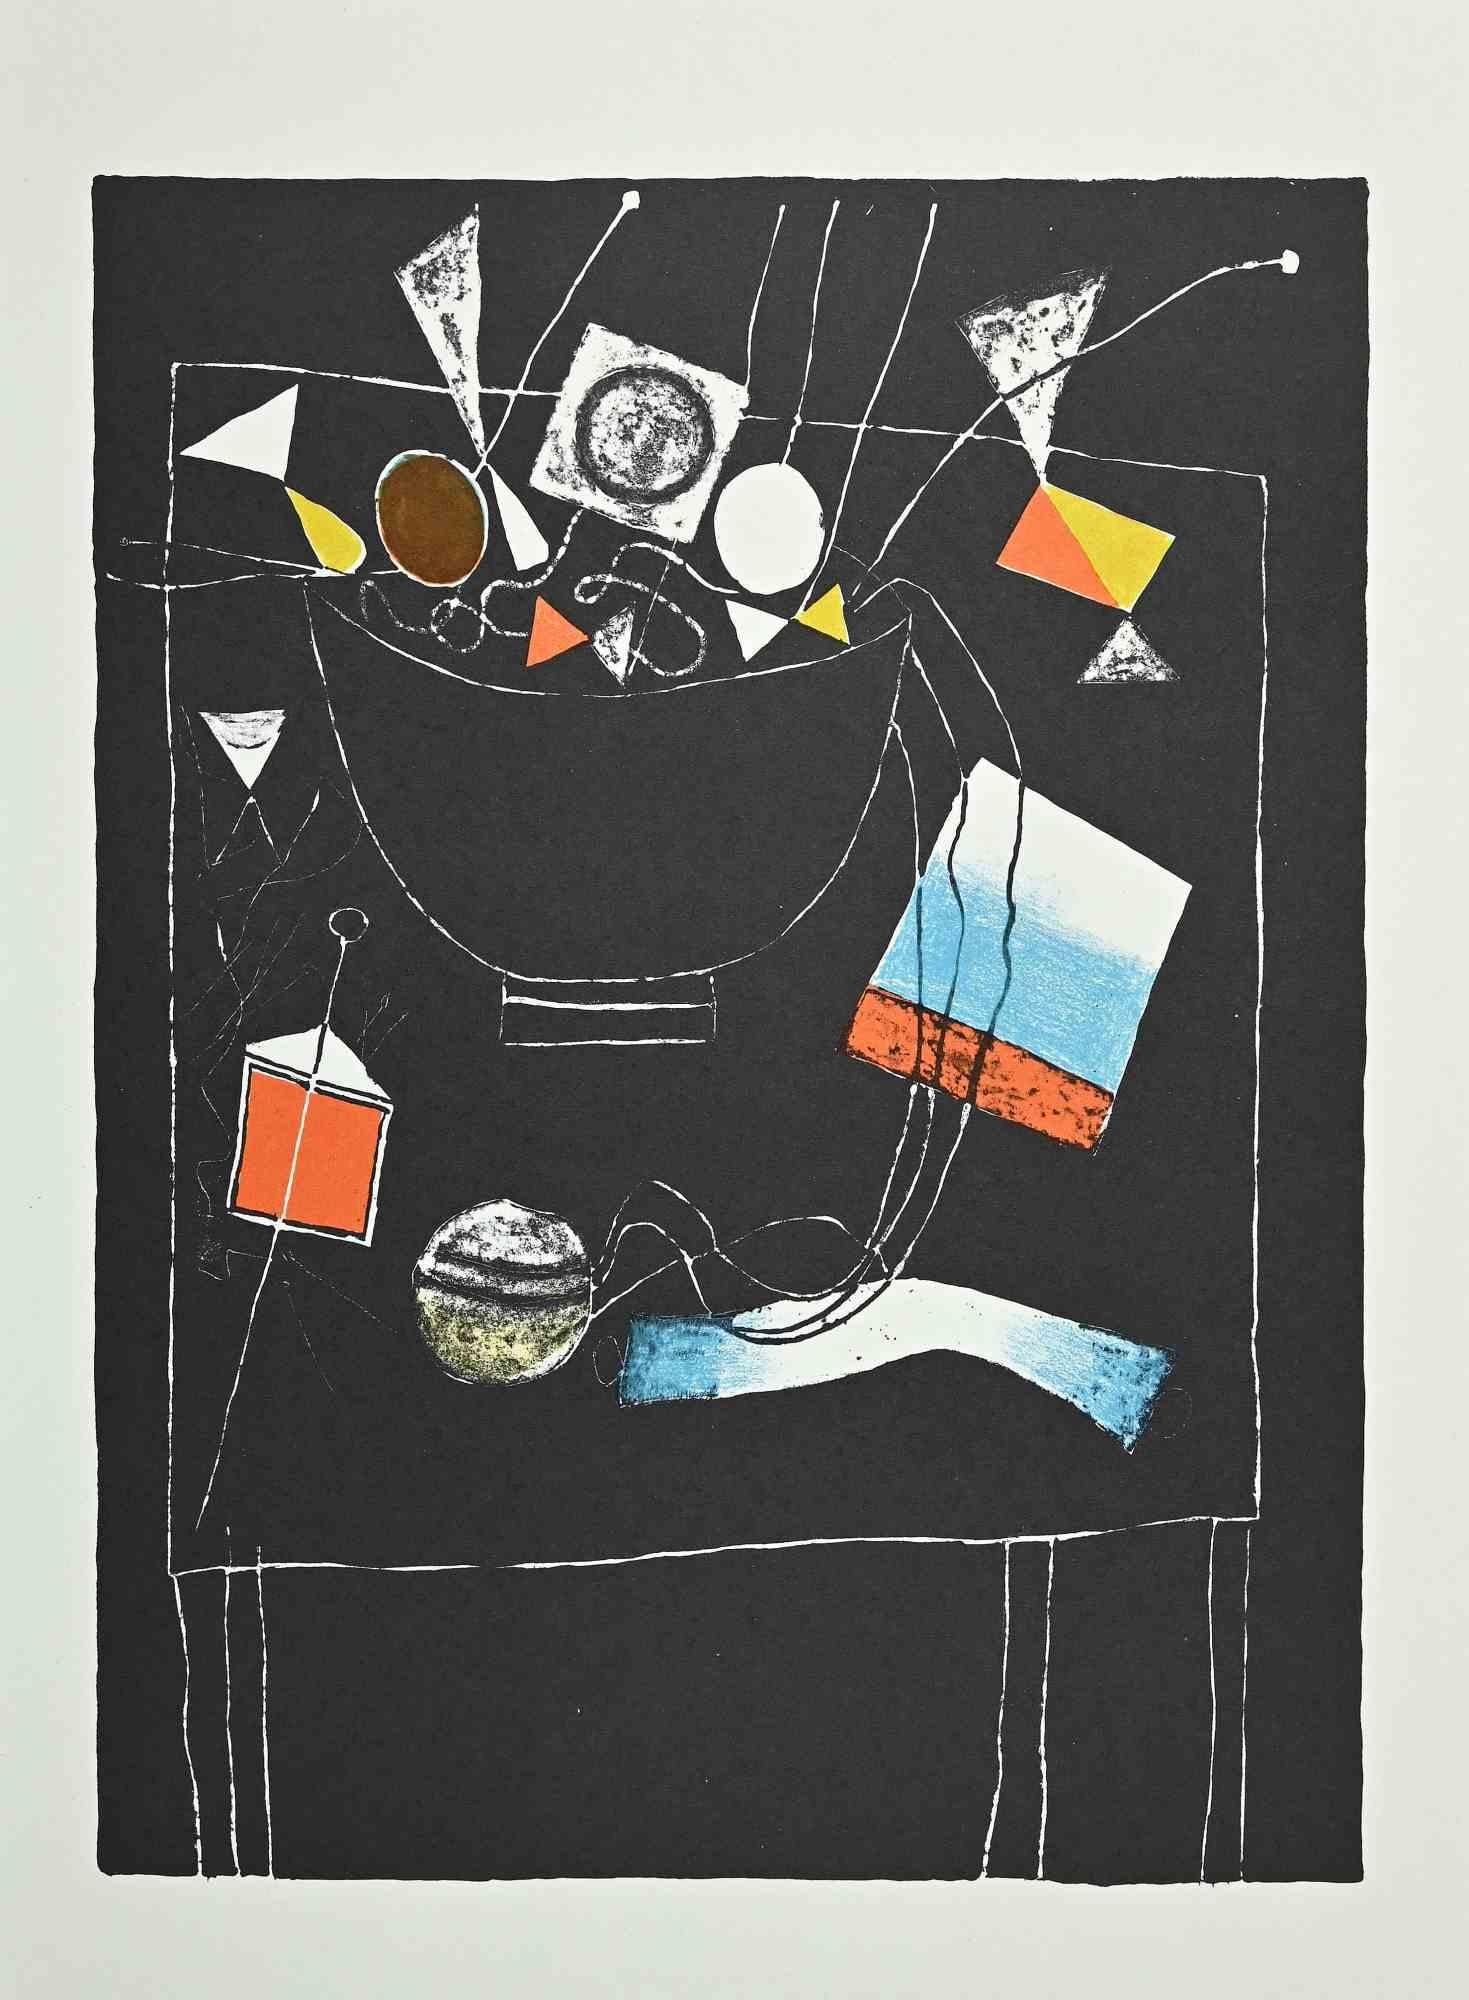 Still Life ist ein Vintage-Offsetdruck auf elfenbeinfarbenem Papier, realisiert von  Franco Gentilini (italienischer Maler, 1909-1981) in den 1970er Jahren.

Der Erhaltungszustand der Kunstwerke ist ausgezeichnet.

Franco Gentilini (italienischer